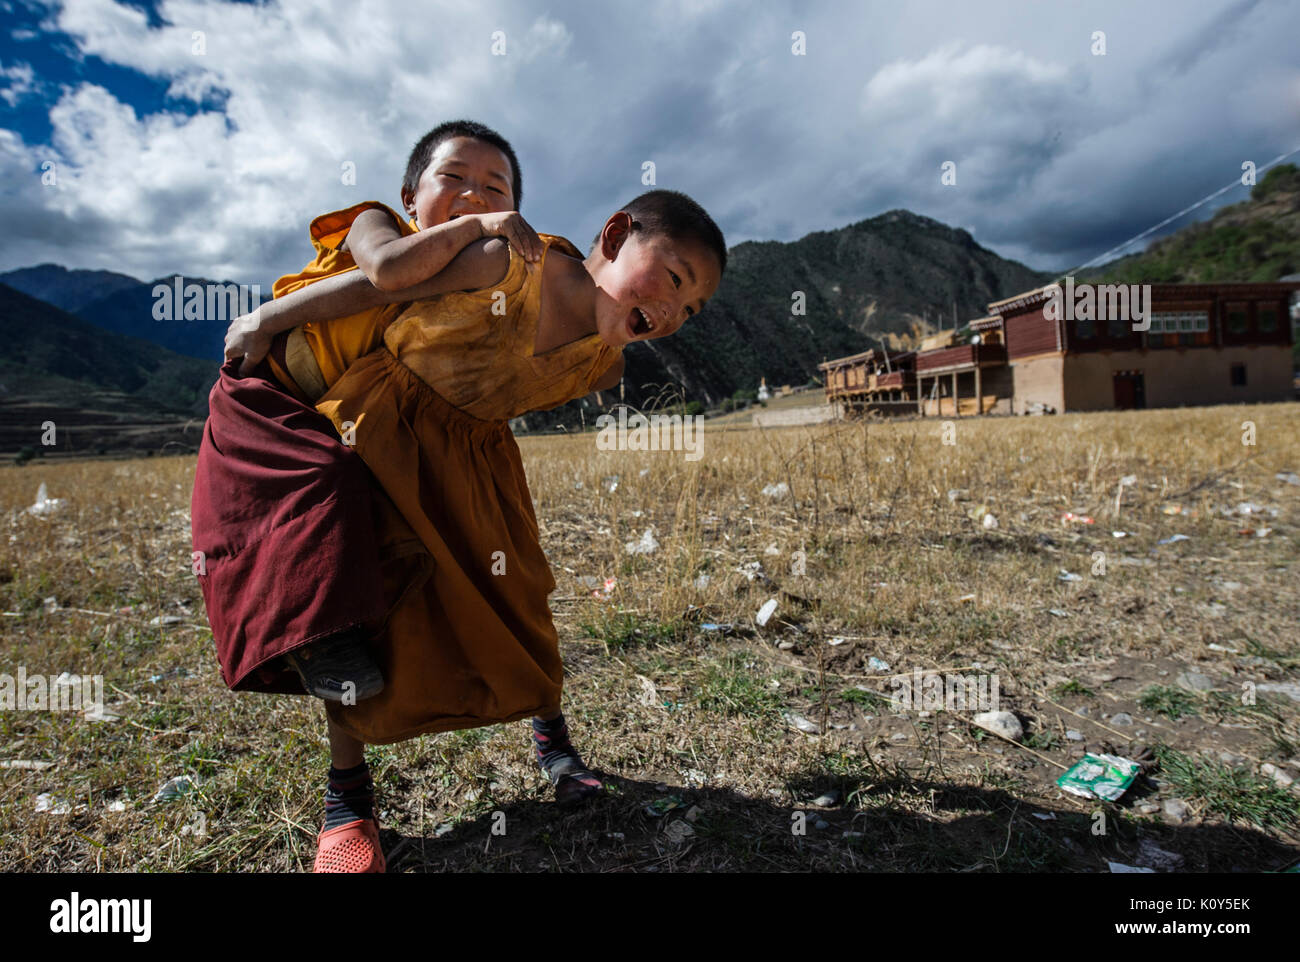 Los jóvenes monjes budistas tibetanos a jugar en su monasterio Foto de stock